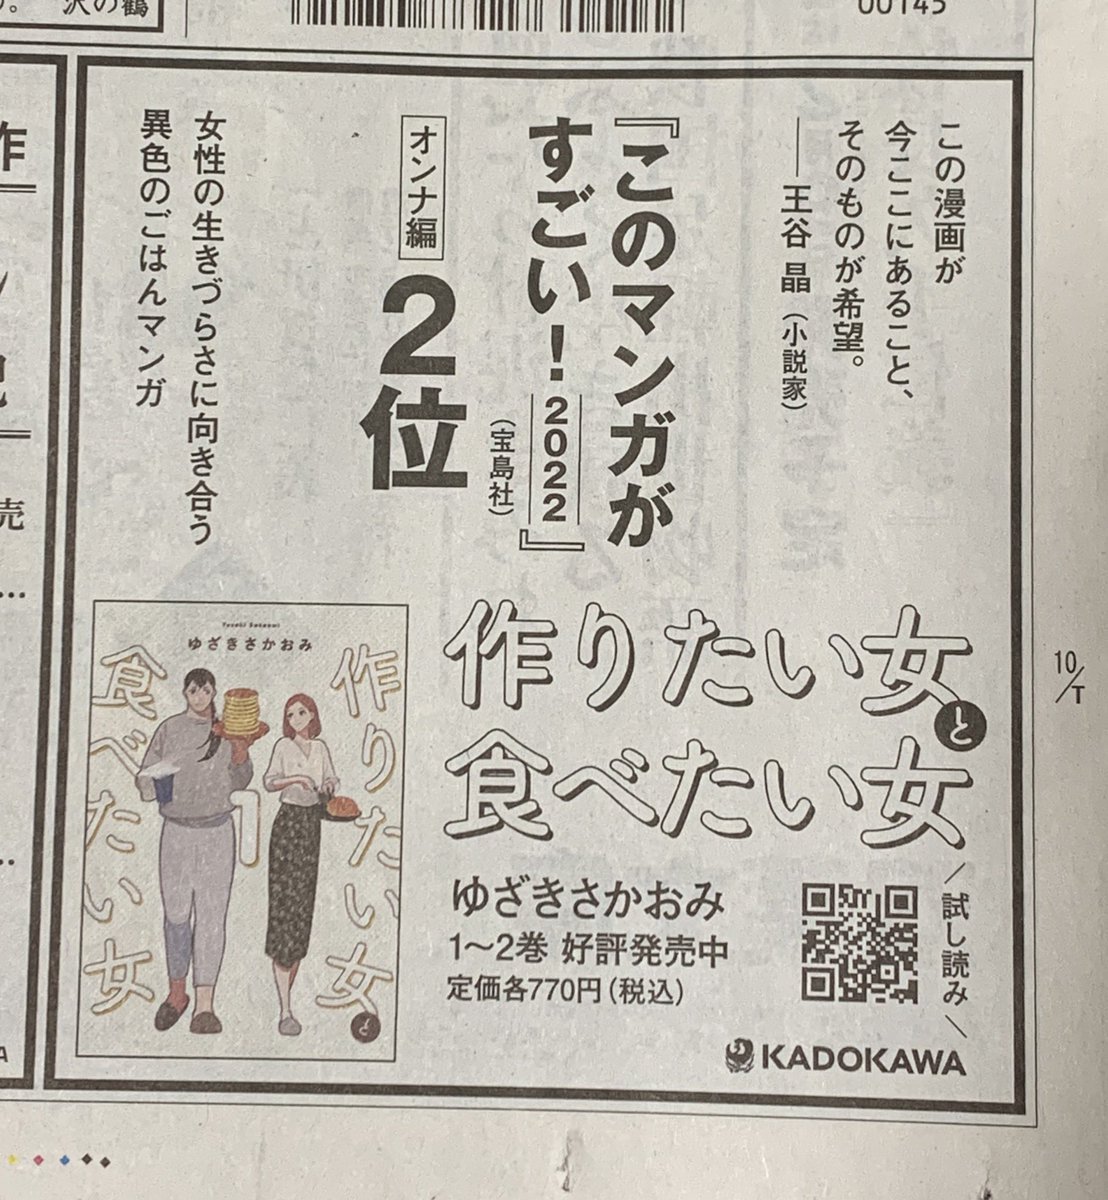 本日12/31の朝日新聞の朝刊につくたべの広告が掲載されています!
お見かけの際はよろしくお願いいたします🙏

#作りたい女と食べたい女 